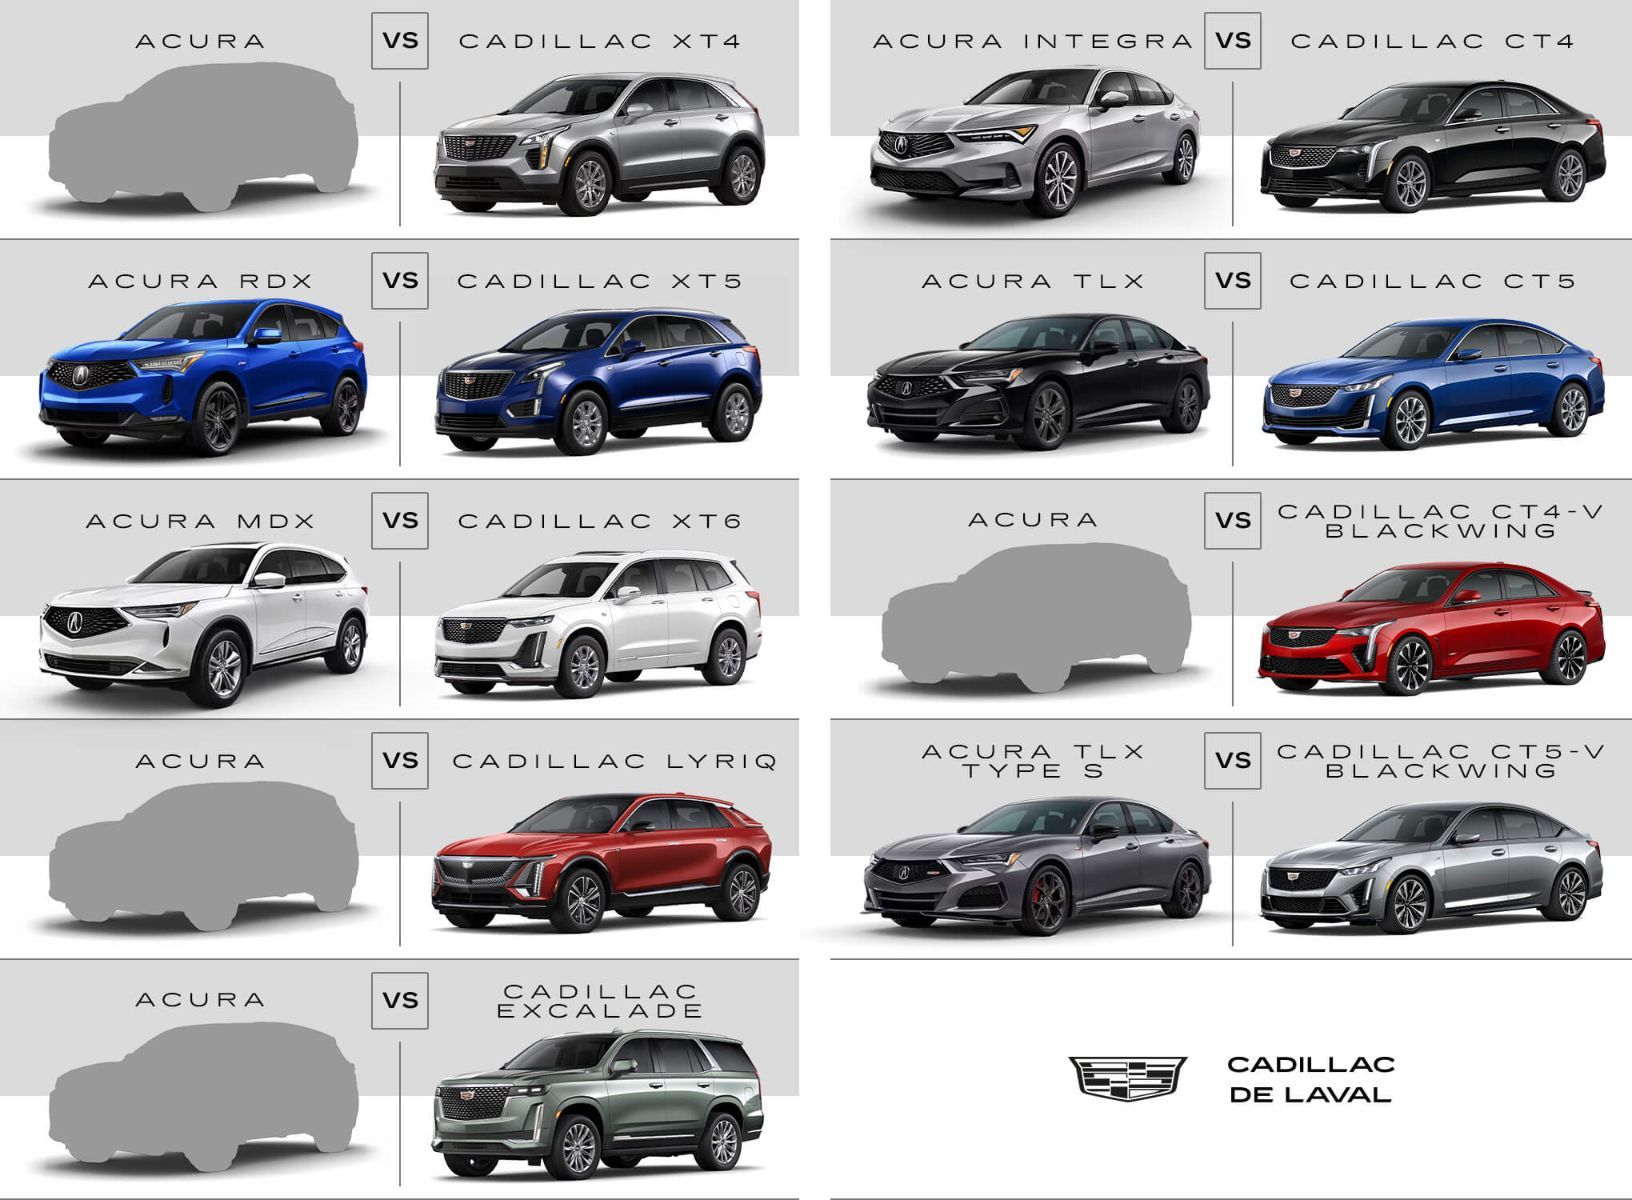 tableau comparatif de différent modèles Acura et Cadillac